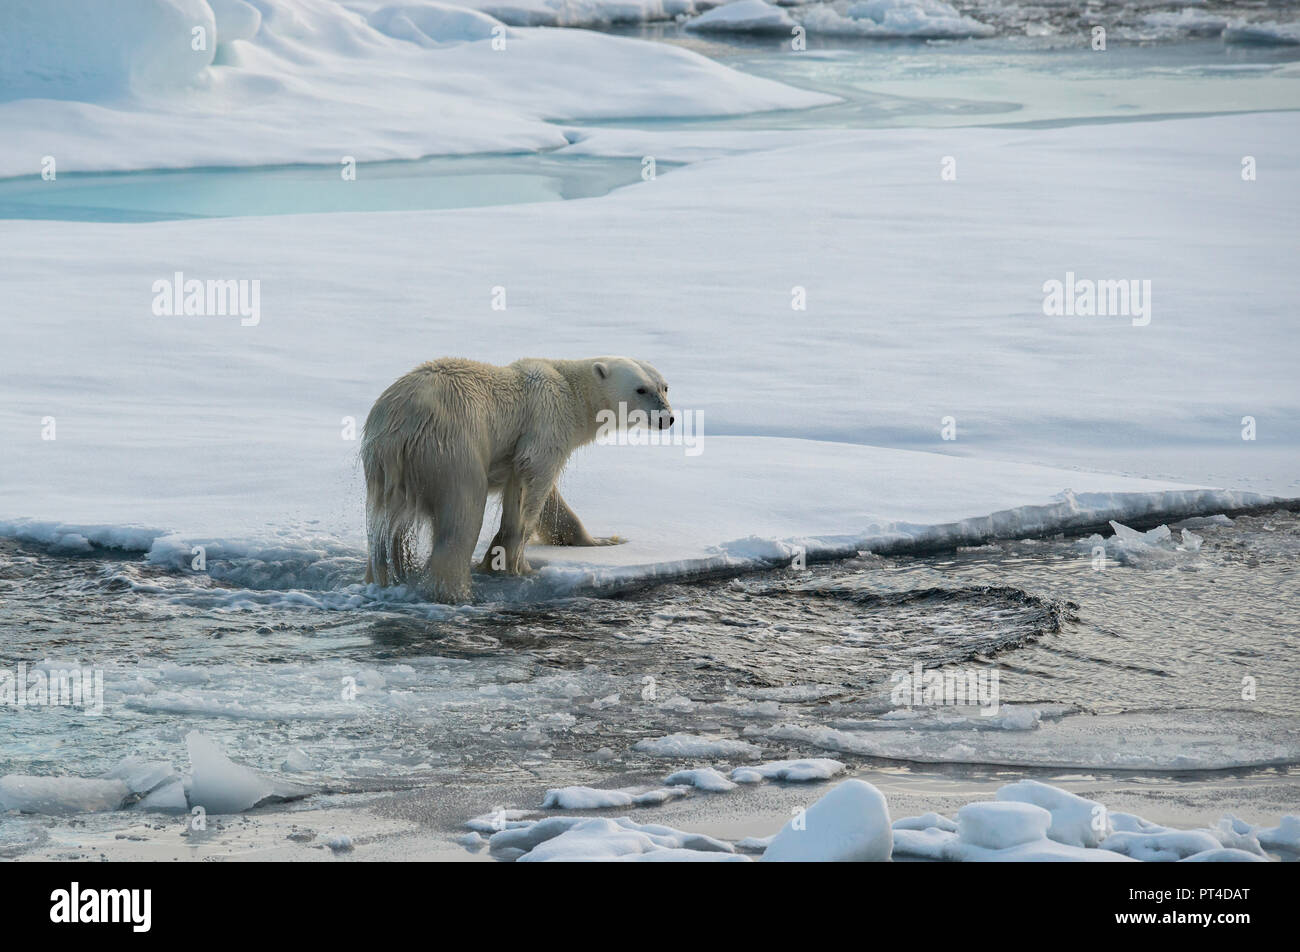 L'ours polaire sur la banquise, l'océan Arctique au nord de Svalbard. Banque D'Images